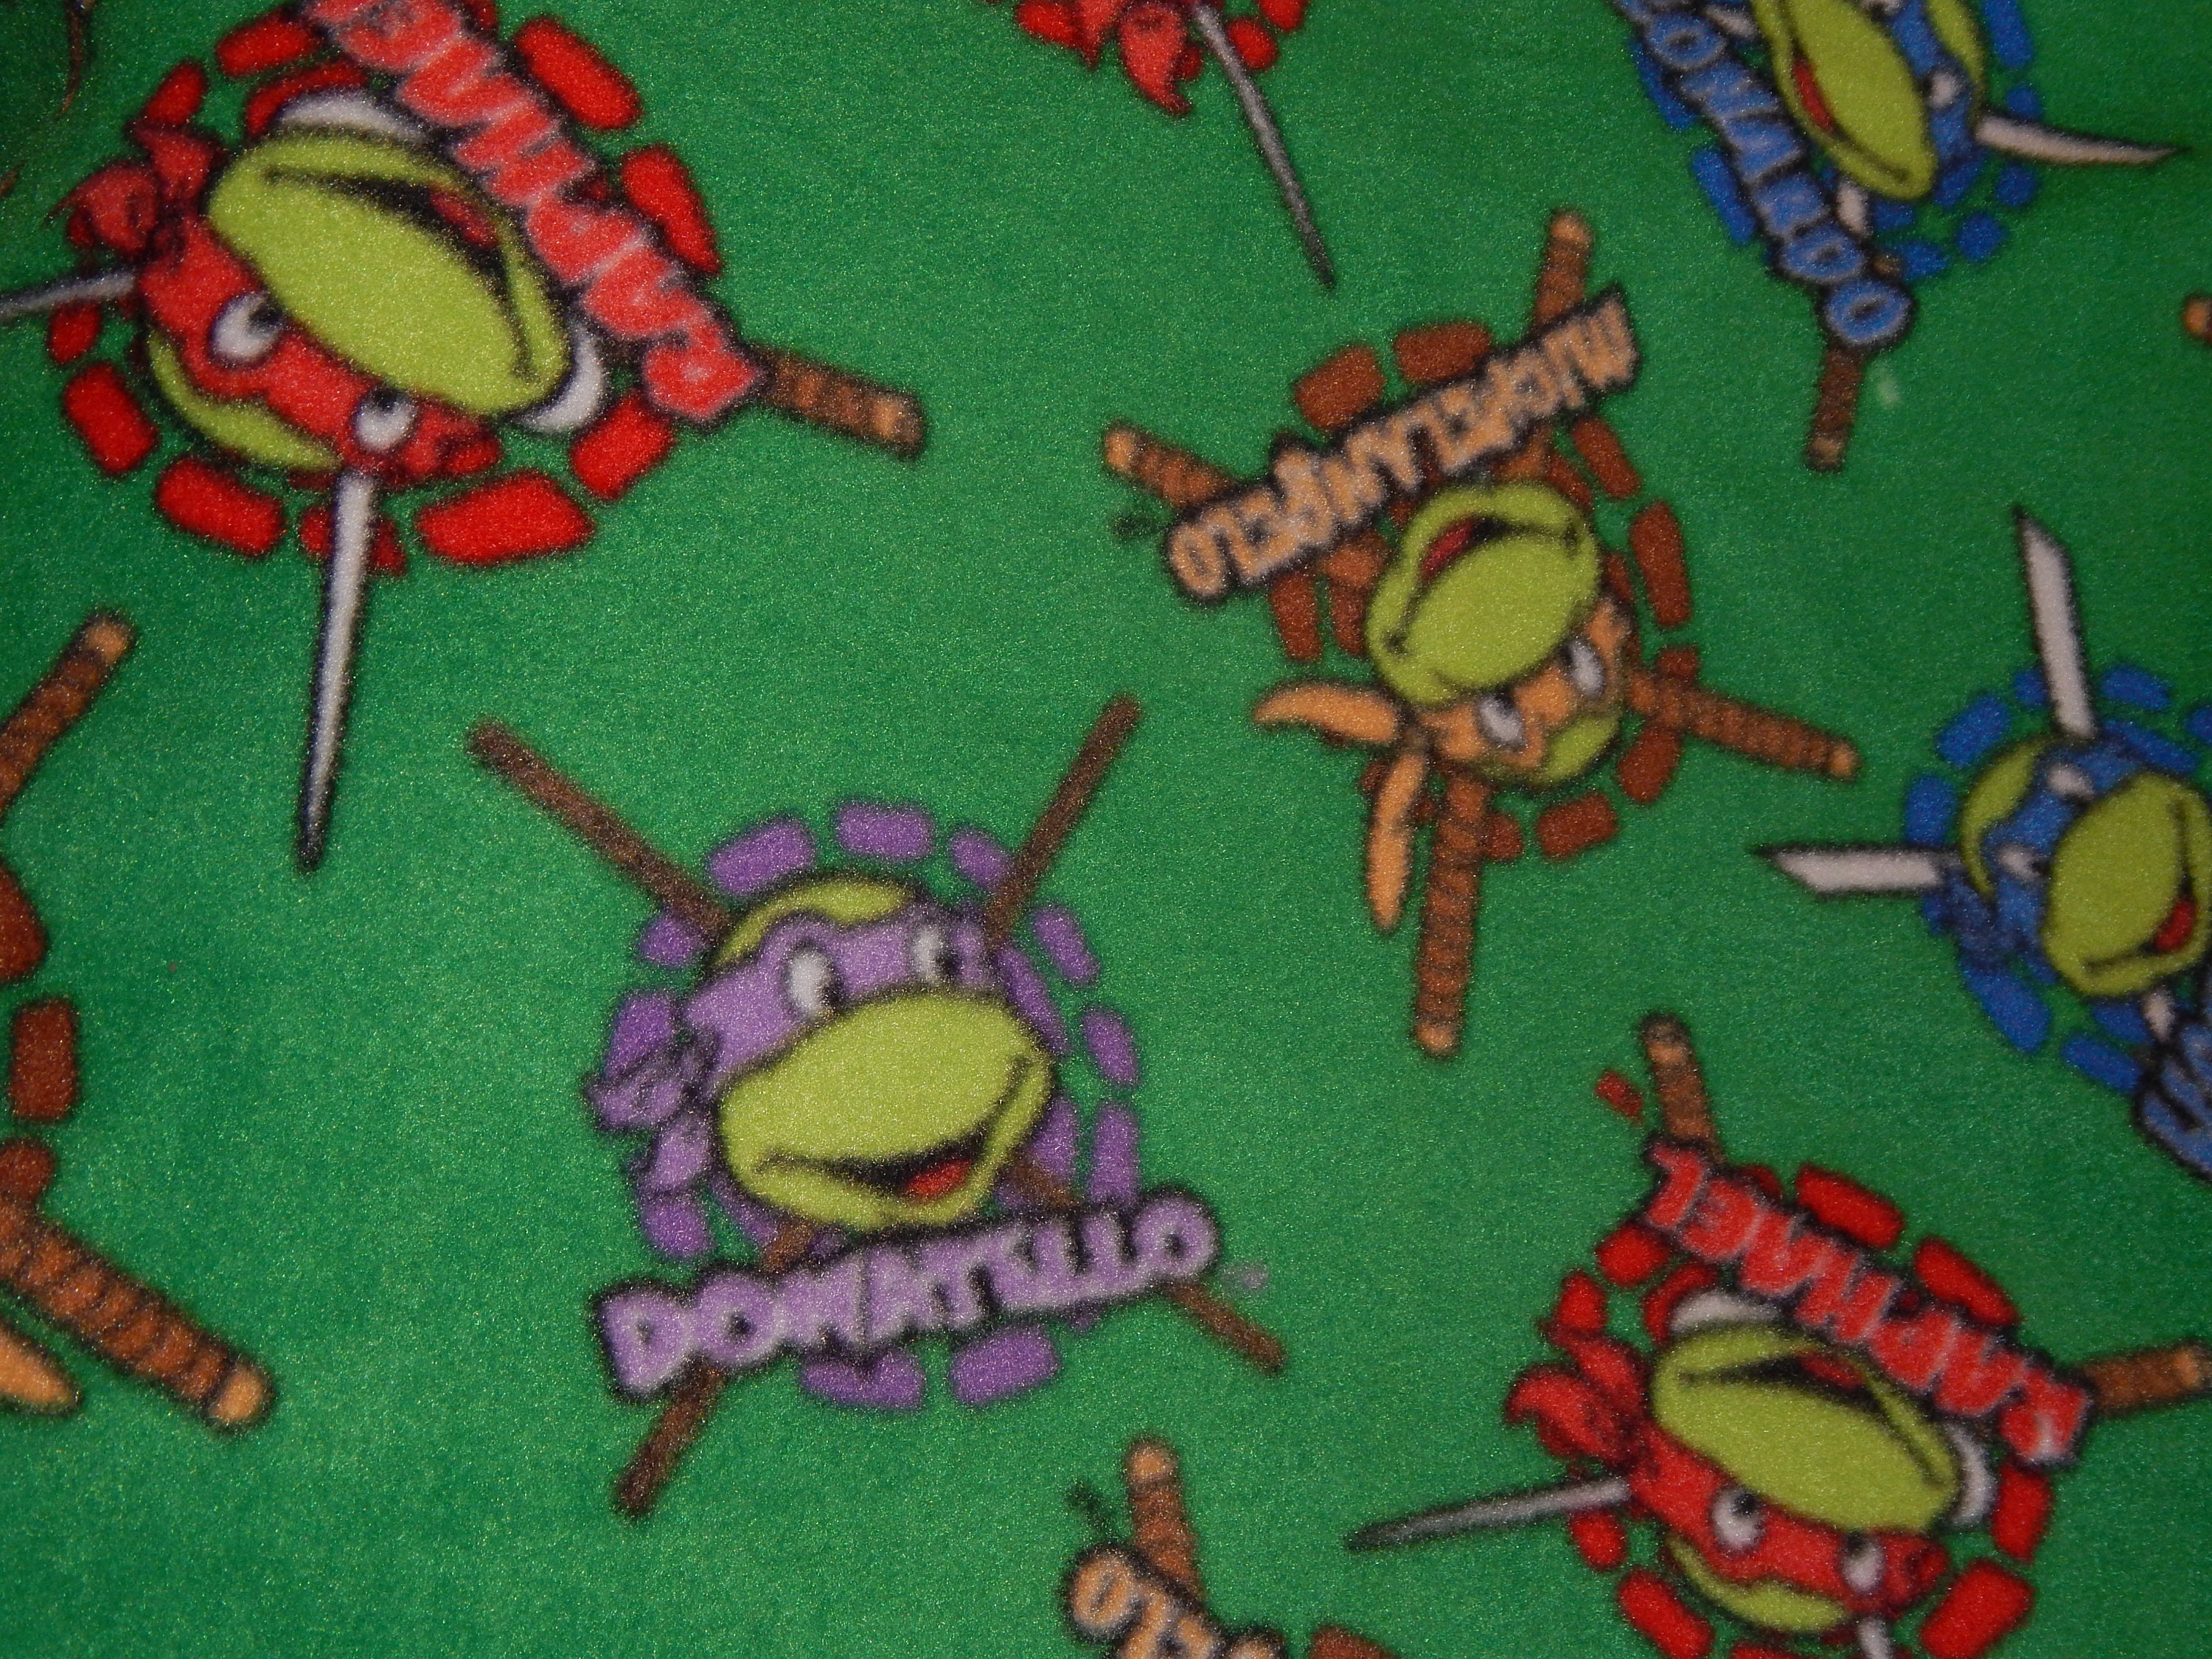 Teenage Mutant Ninja Turtles Cowabunga Christmas Pajamas Set - Torunstyle